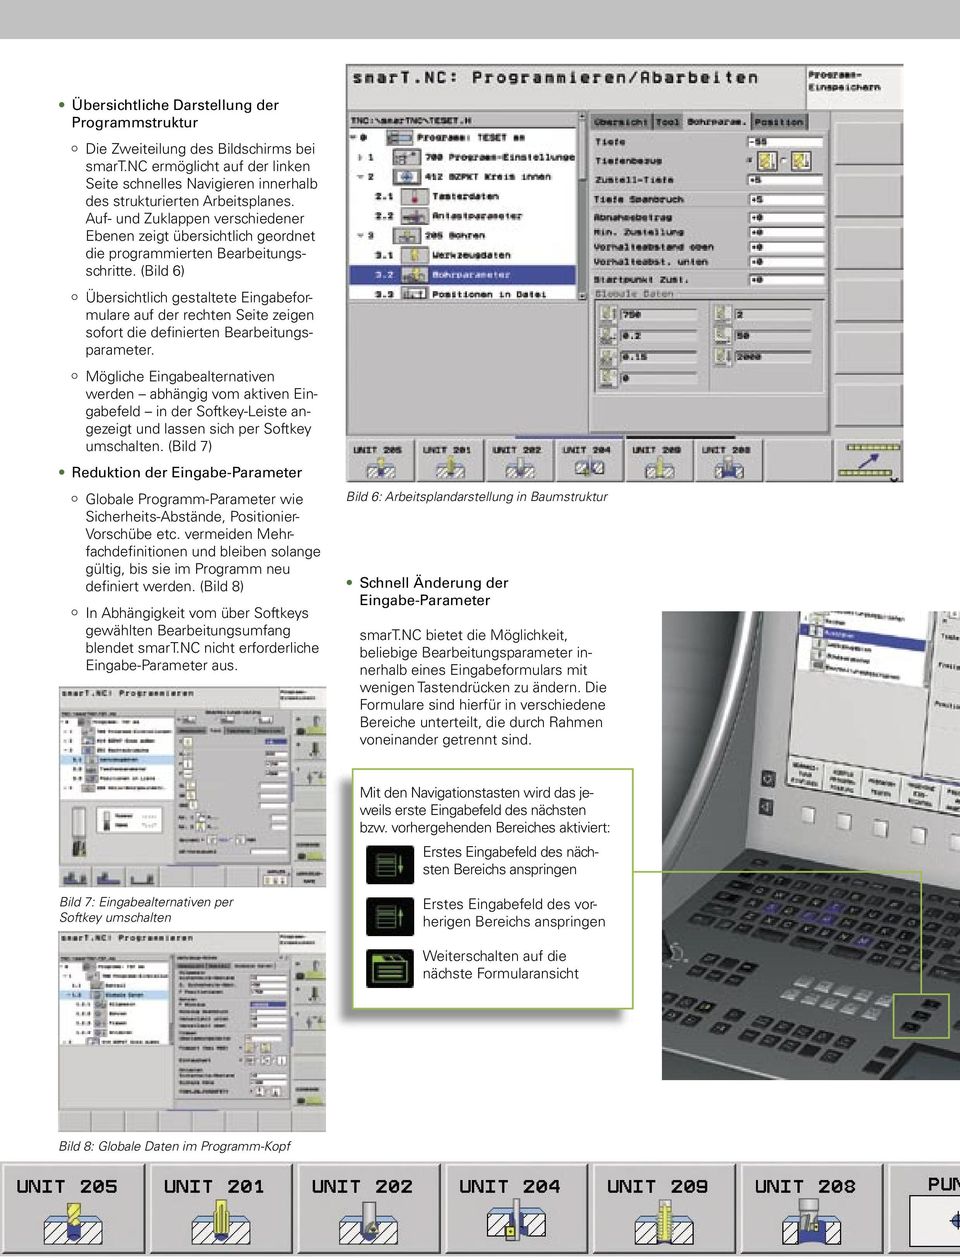 (Bild 6) Übersichtlich gestaltete Eingabeformulare auf der rechten Seite zeigen sofort die definierten Bearbeitungsparameter.